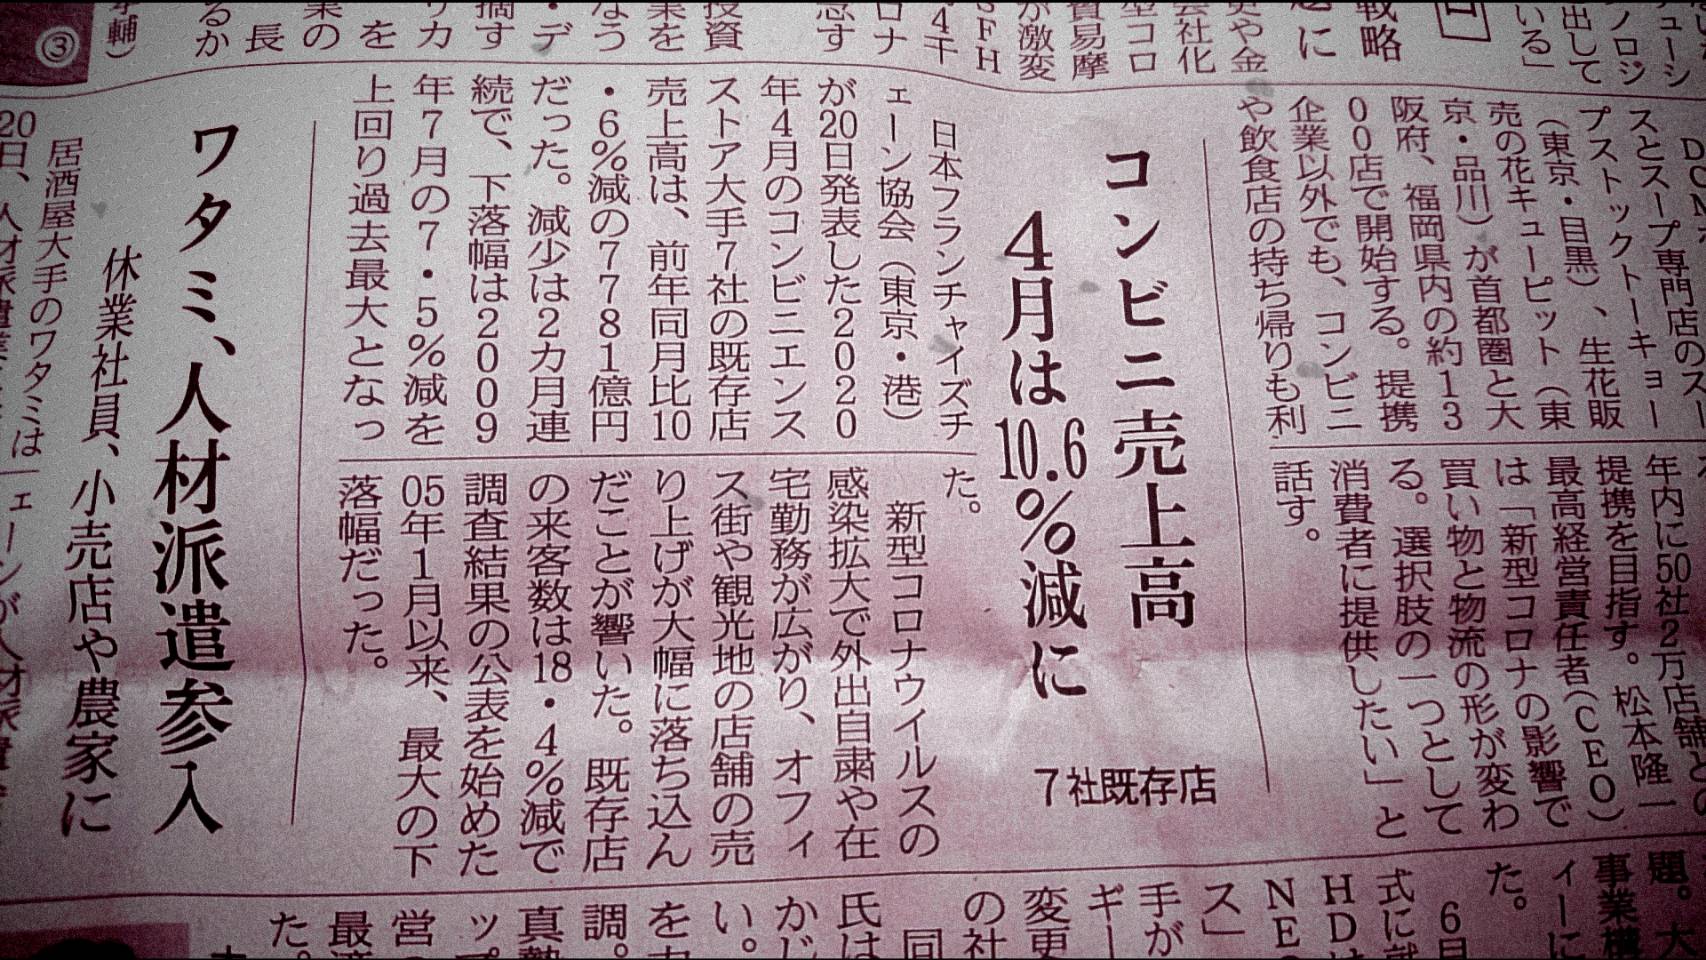 コンビニの売上とワタミの施策 東京食彩株式会社